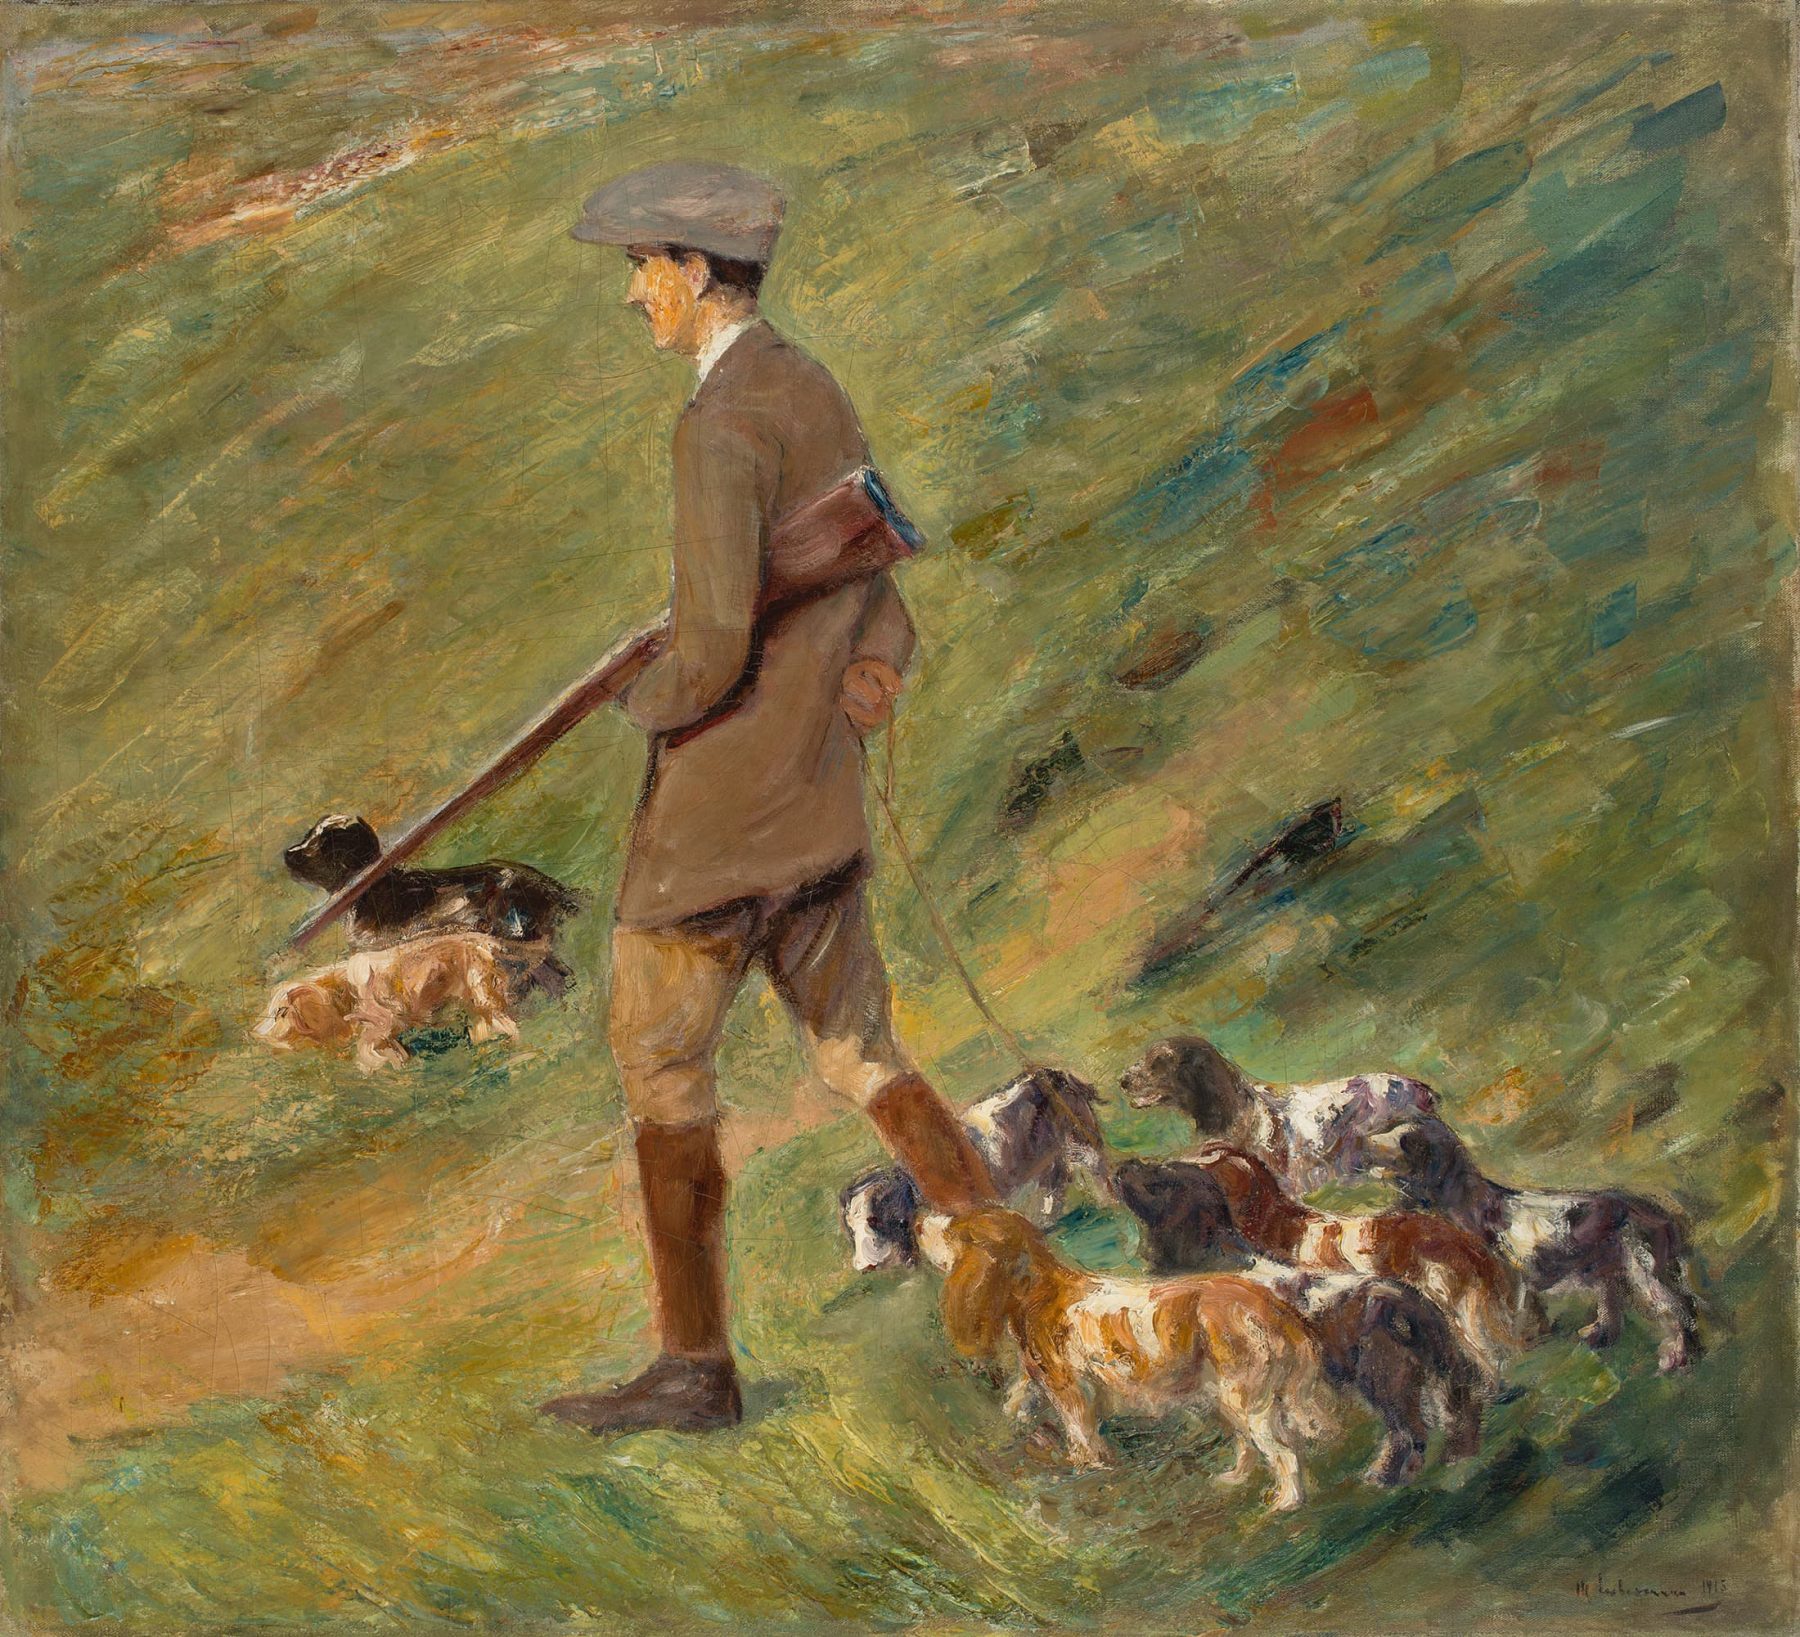 Gemälde eines Jägers mit mehreren Hunden.